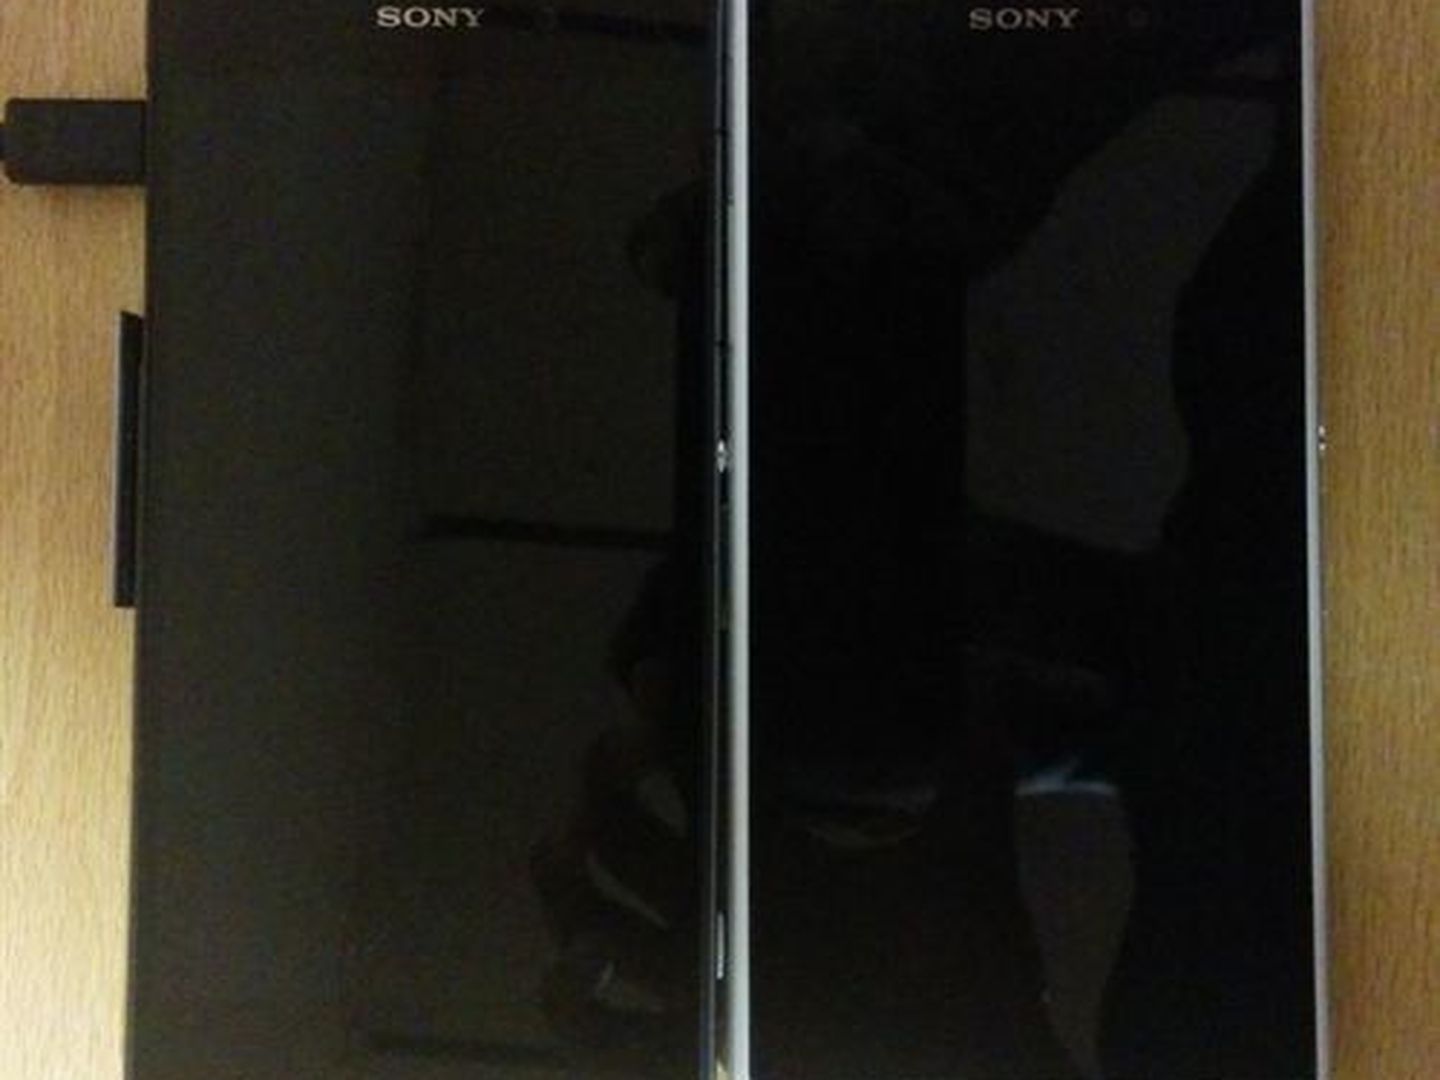 Comparación del Sony Xperia Z2 y su antecesor